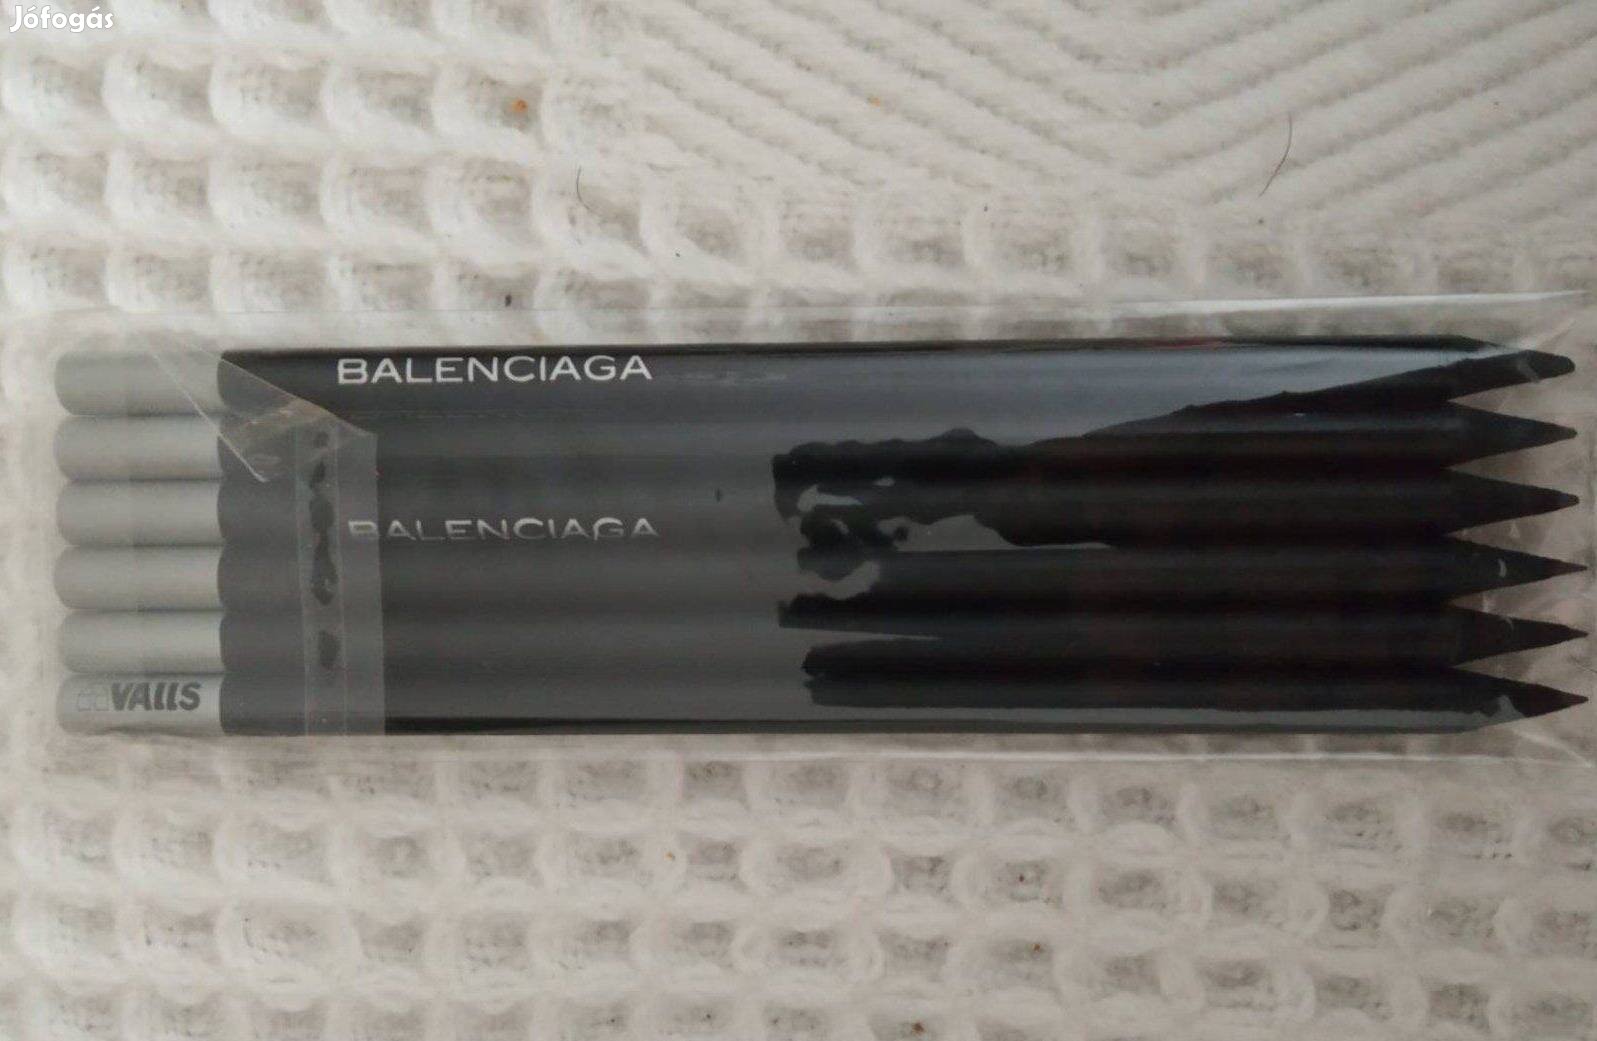 Balenciaga menő ceruza készlet. 6 db, teljesen új. Debrecenben